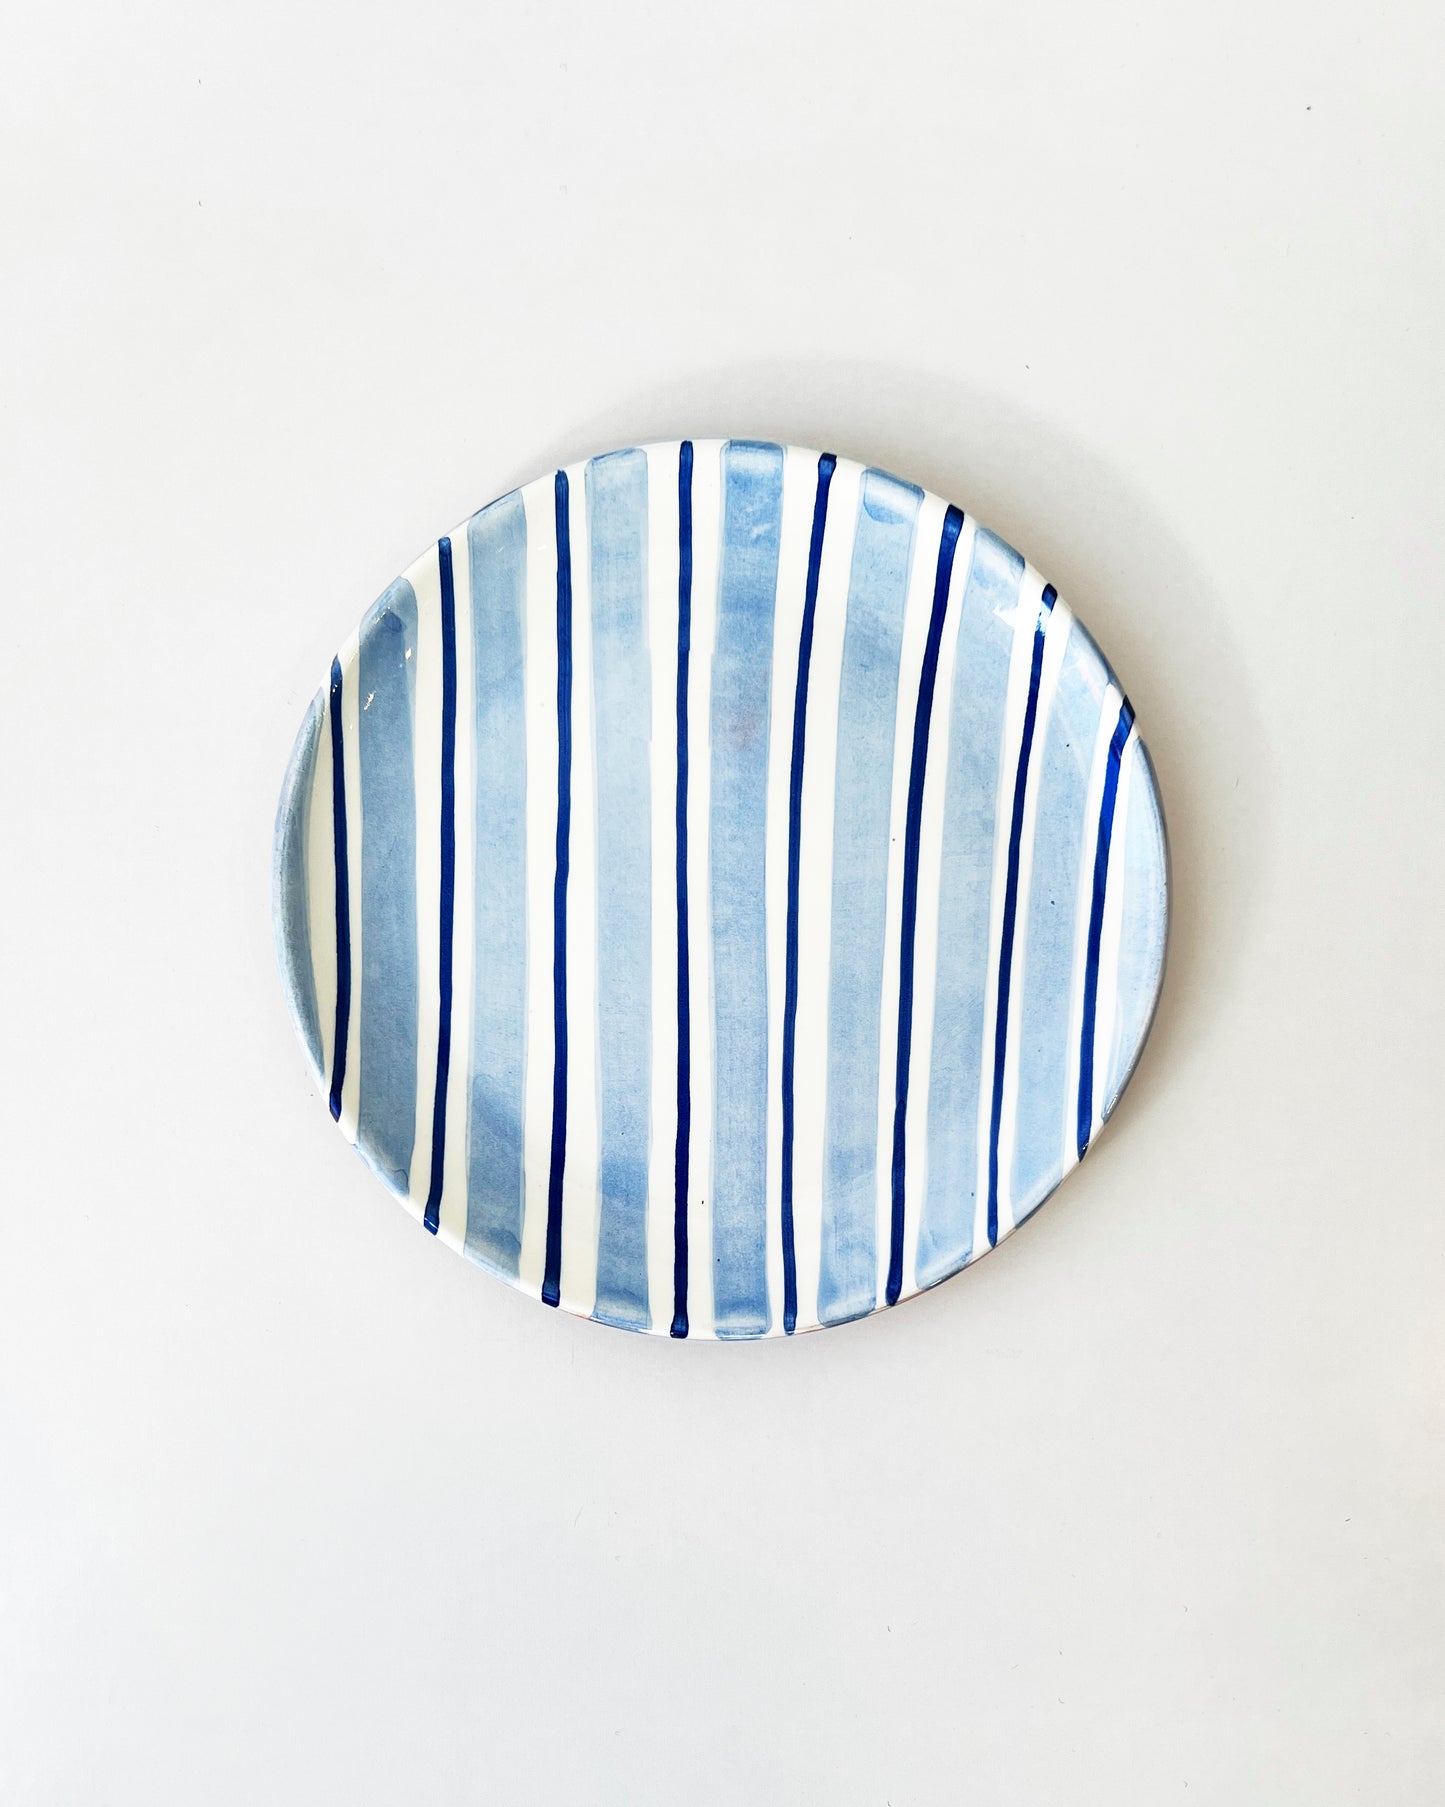 Casa Cubista Cabana Plates and Bowls - Blue